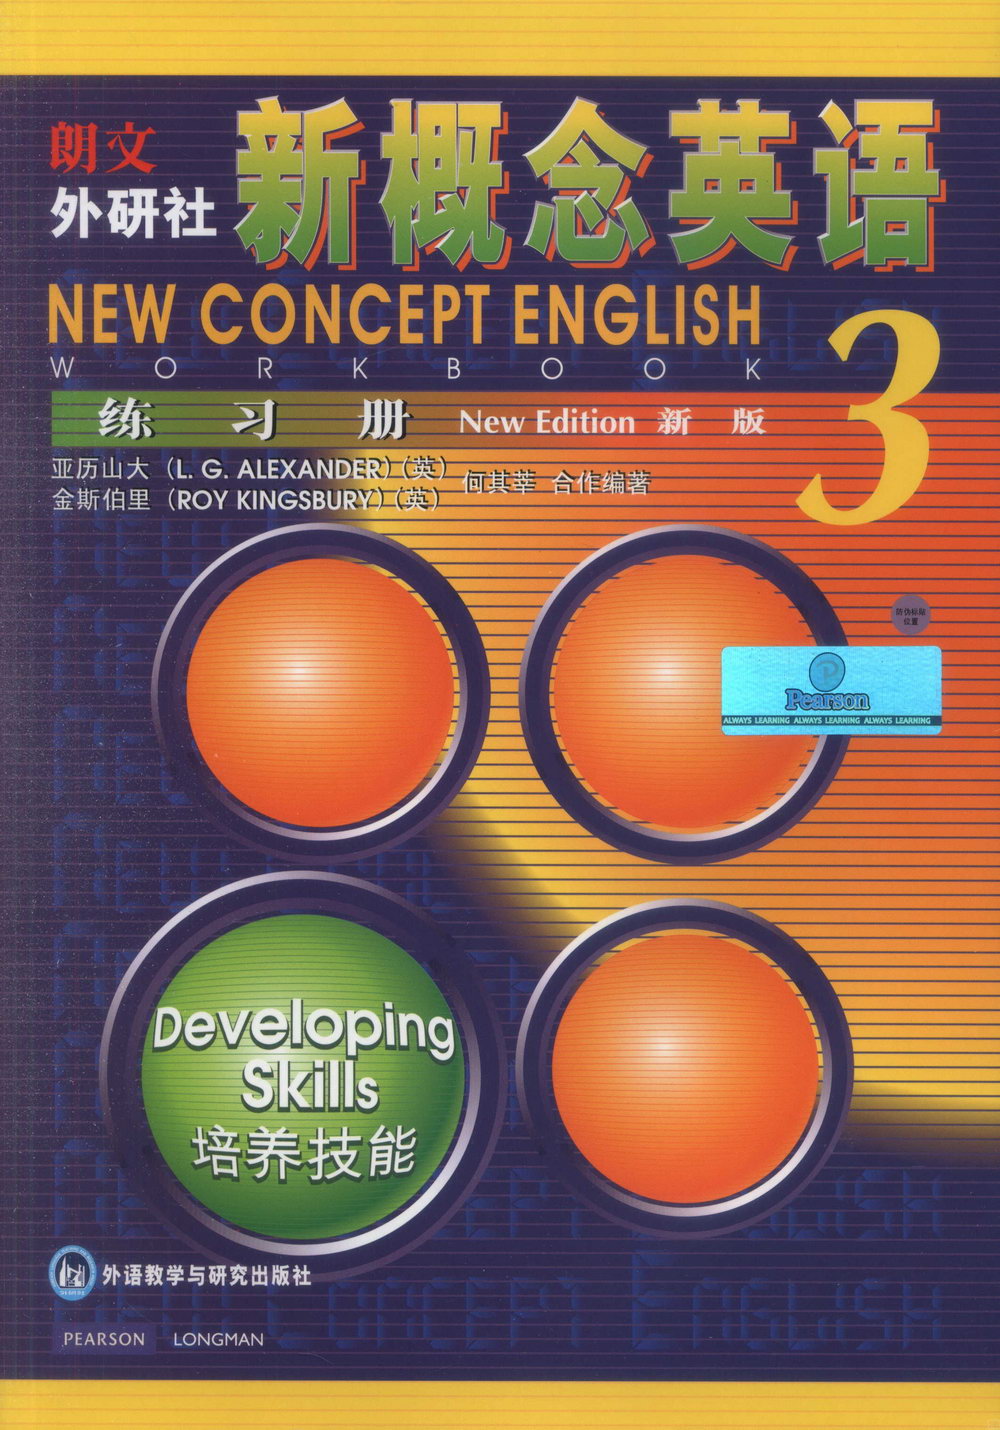 新概念英語 (新版)練習冊 3